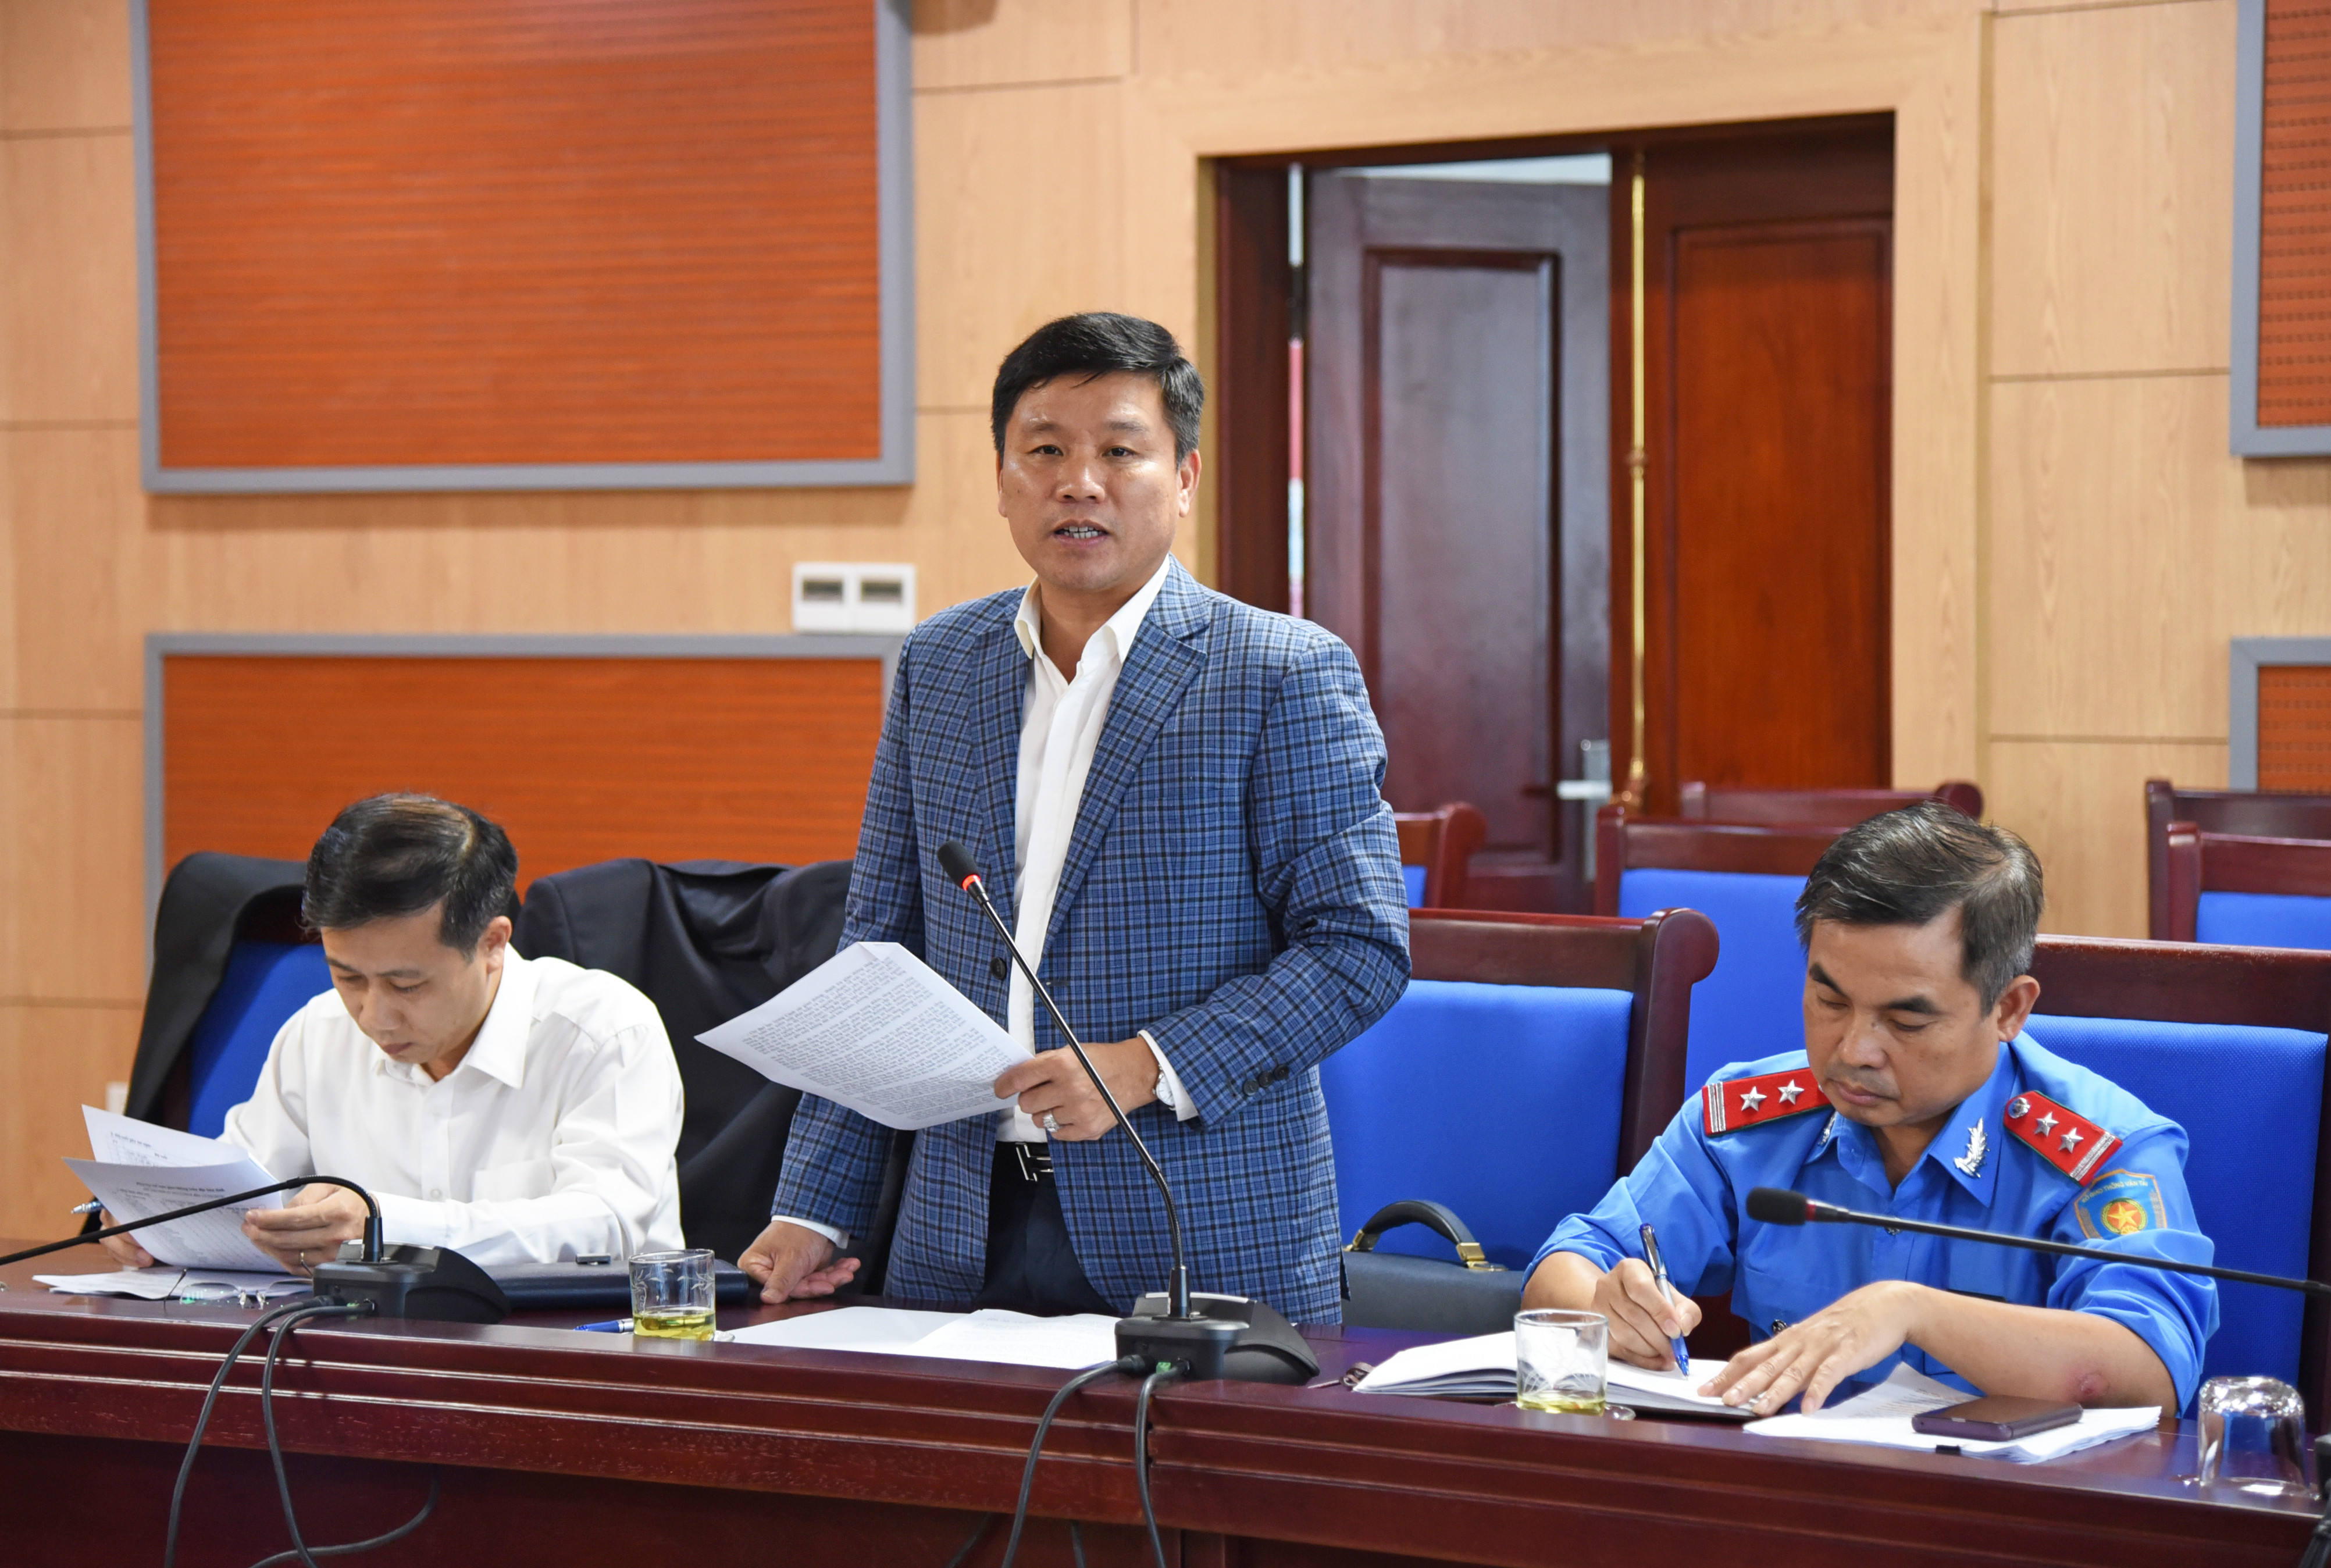 Giám đốc Sở Giao thông vận tải Hoàng Phú Hiền trình bày báo cáo về tình hình trật tự an toàn giao thông năm 2019. Ảnh: Thu Giang